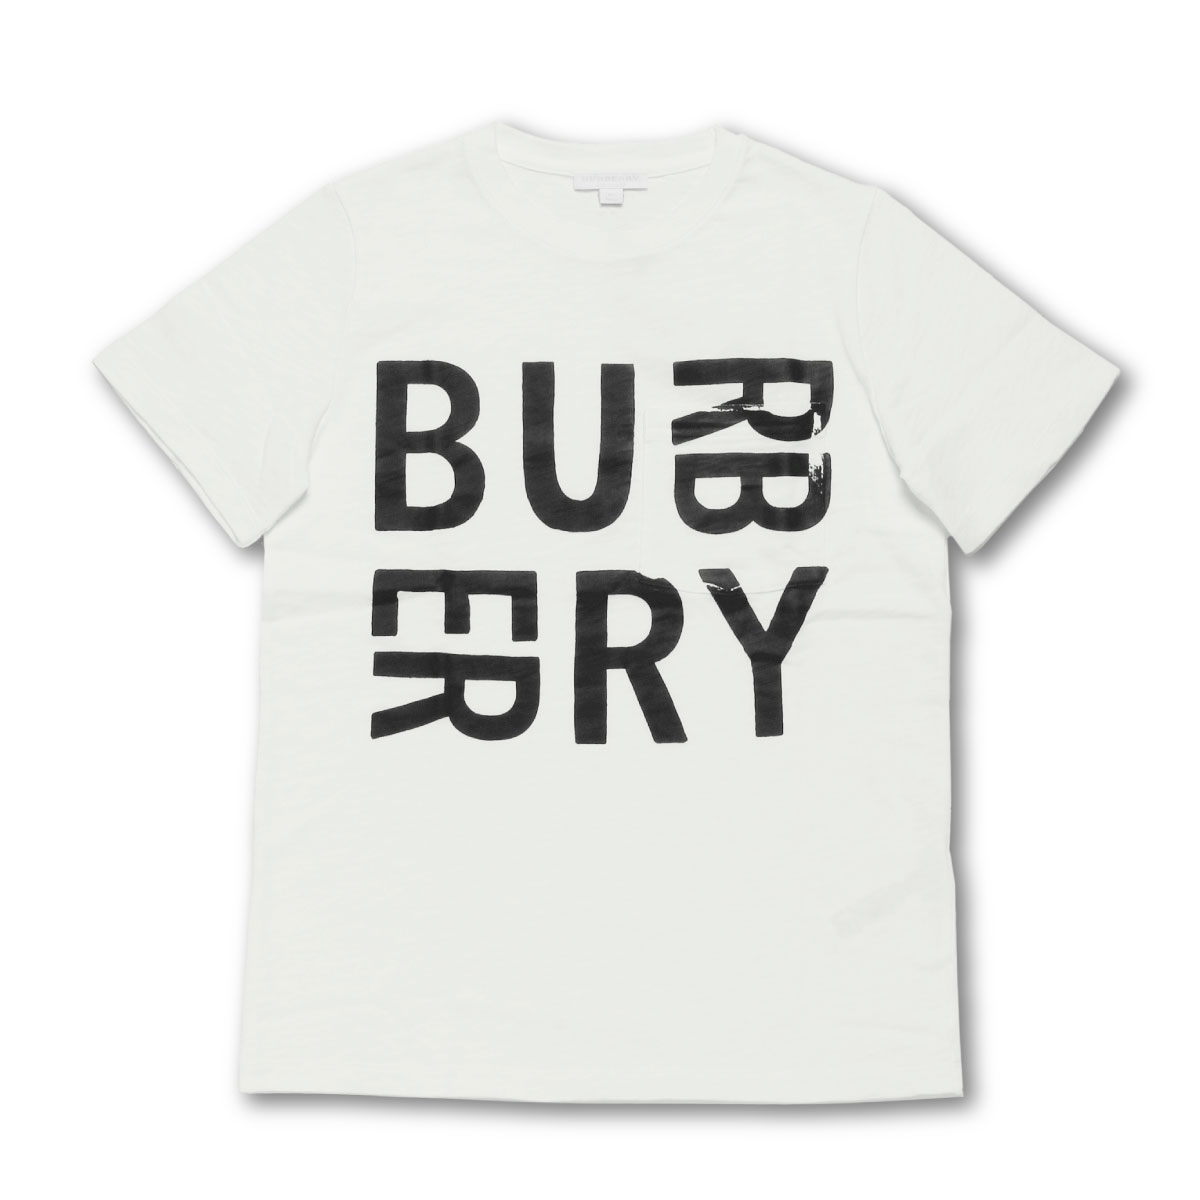 楽天市場 バーバリー Burberry Tシャツ キッズ ボーイズ 8006928 半袖